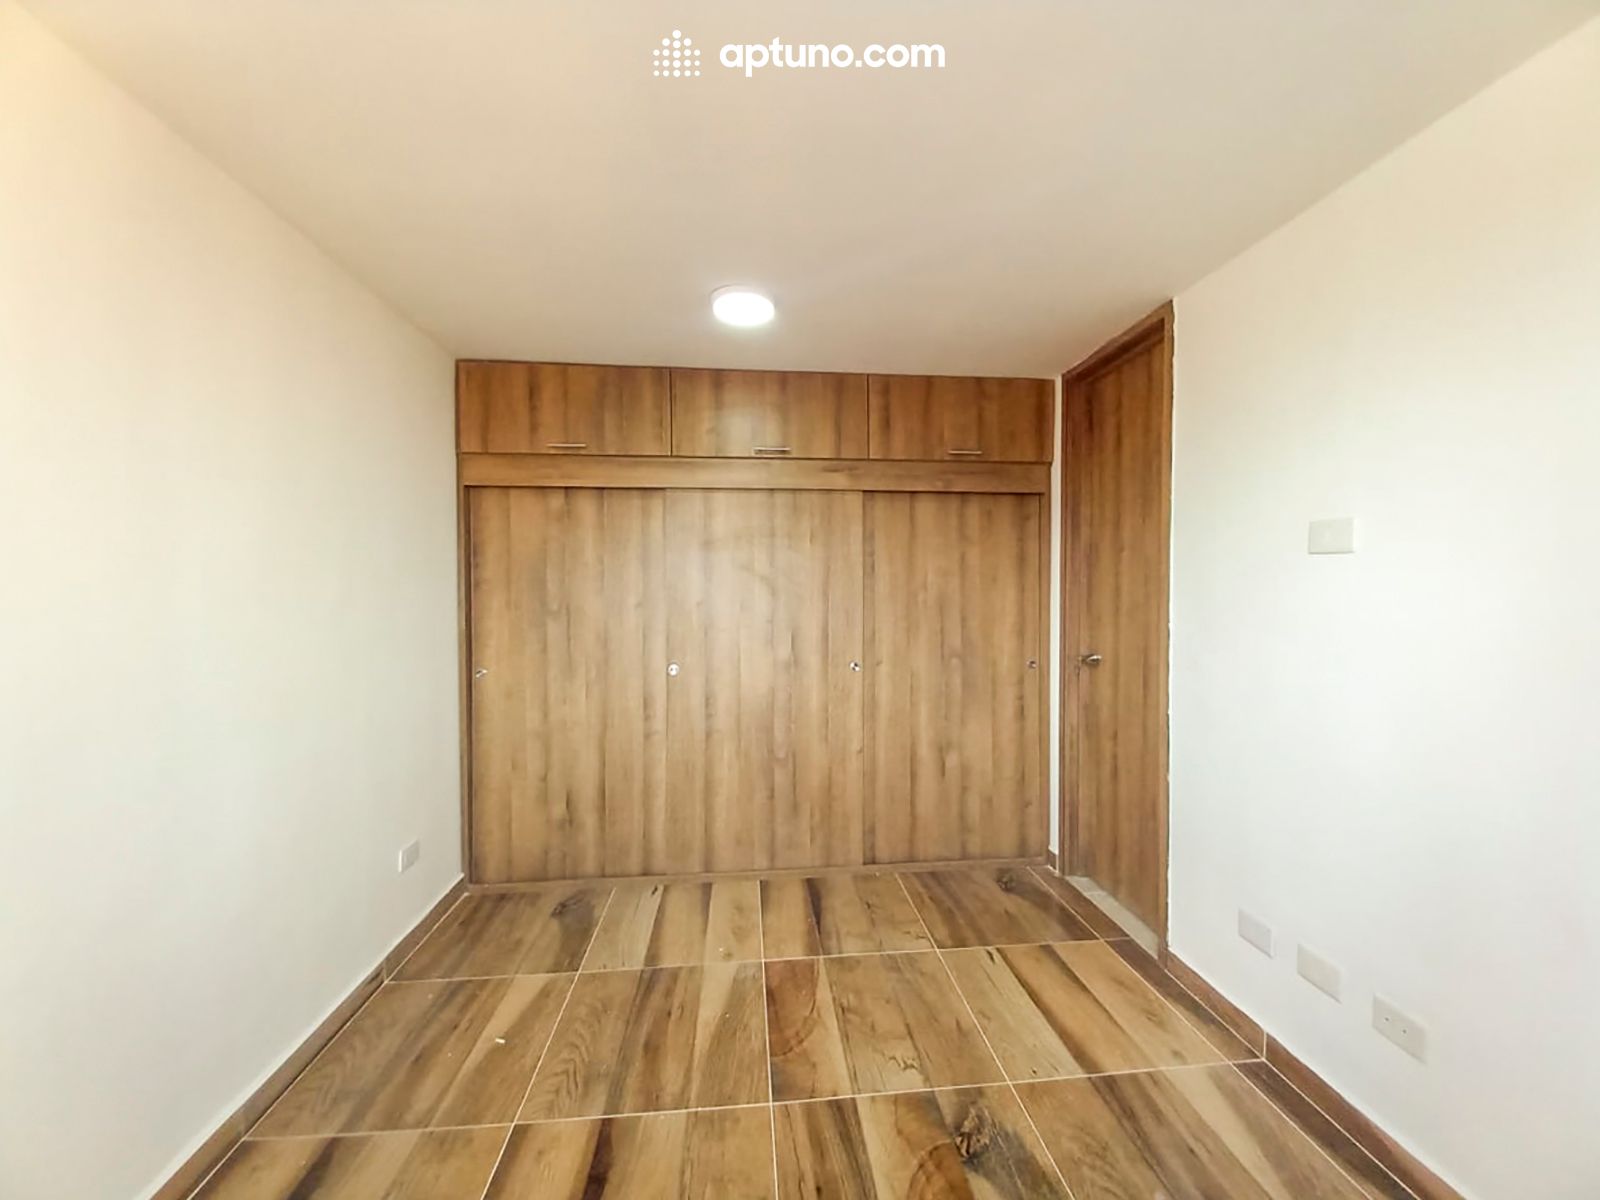 Apartamento en arriendo Madrid 55 m² - $ 850.000,00